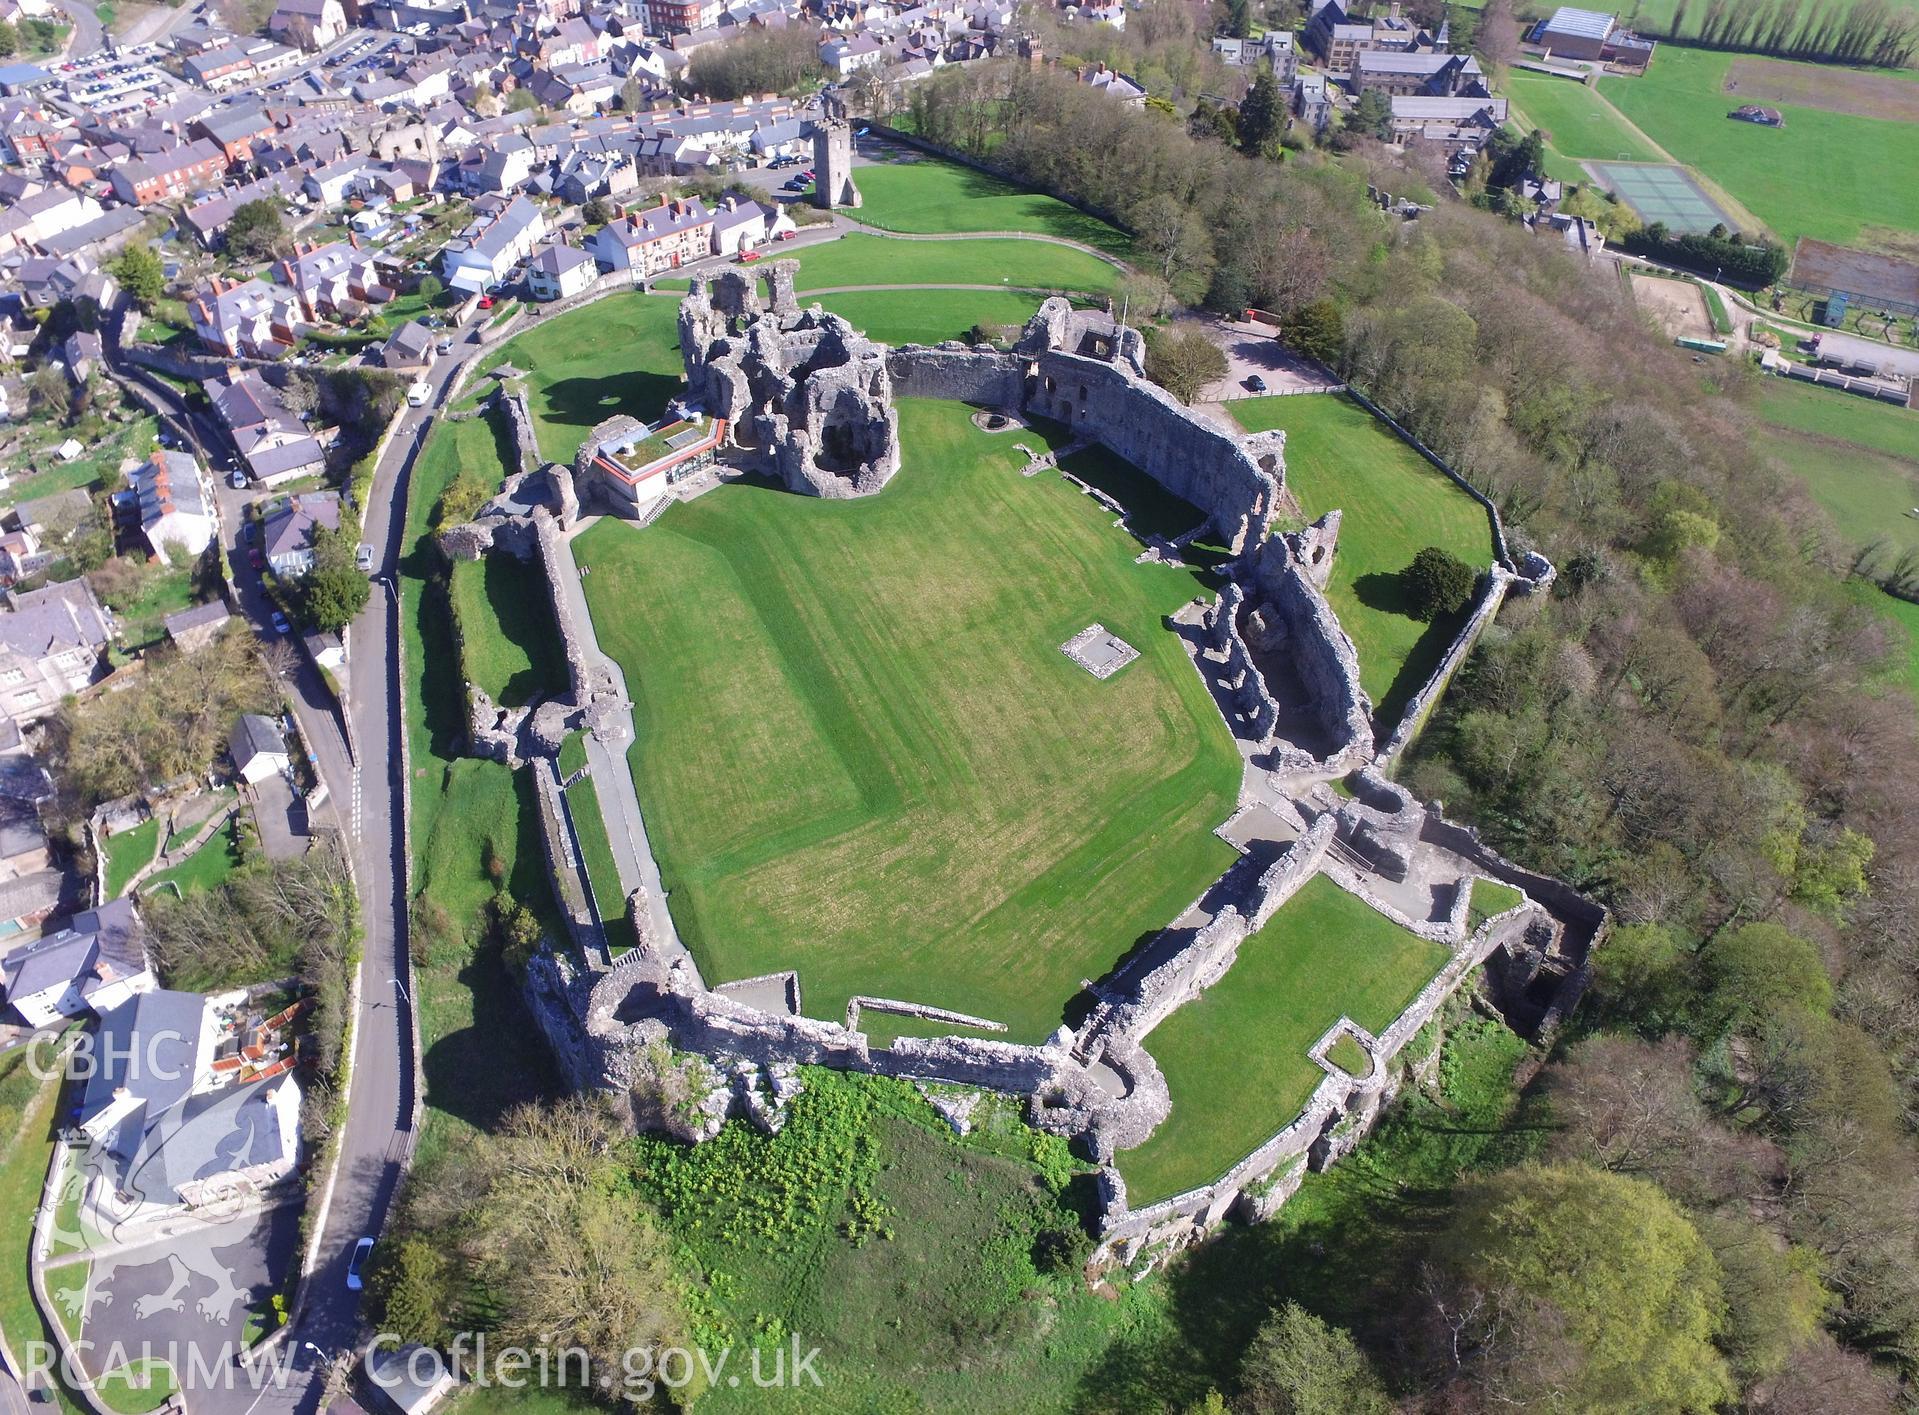 Colour photo showing aerial view of Denbigh Castle, taken by Paul R. Davis, 20th April 2018.